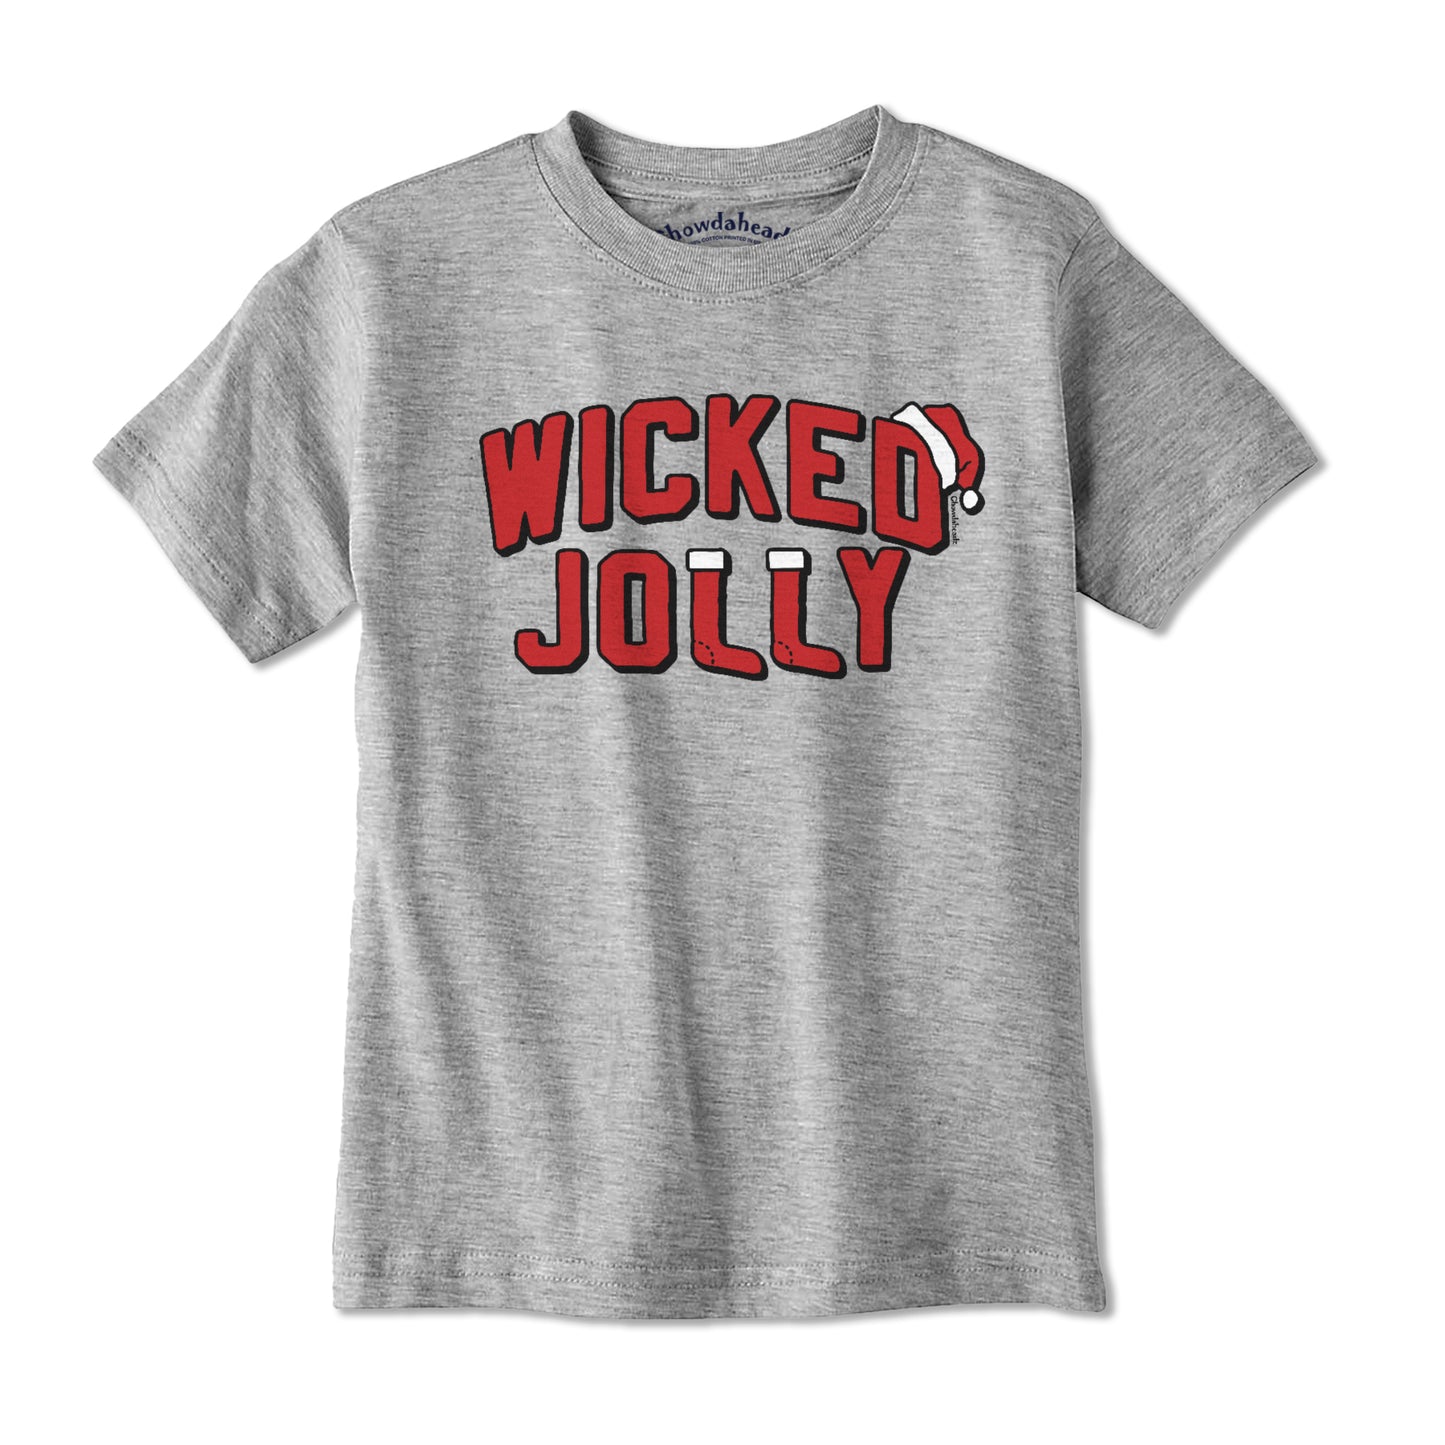 Wicked Jolly Youth T-Shirt - Chowdaheadz